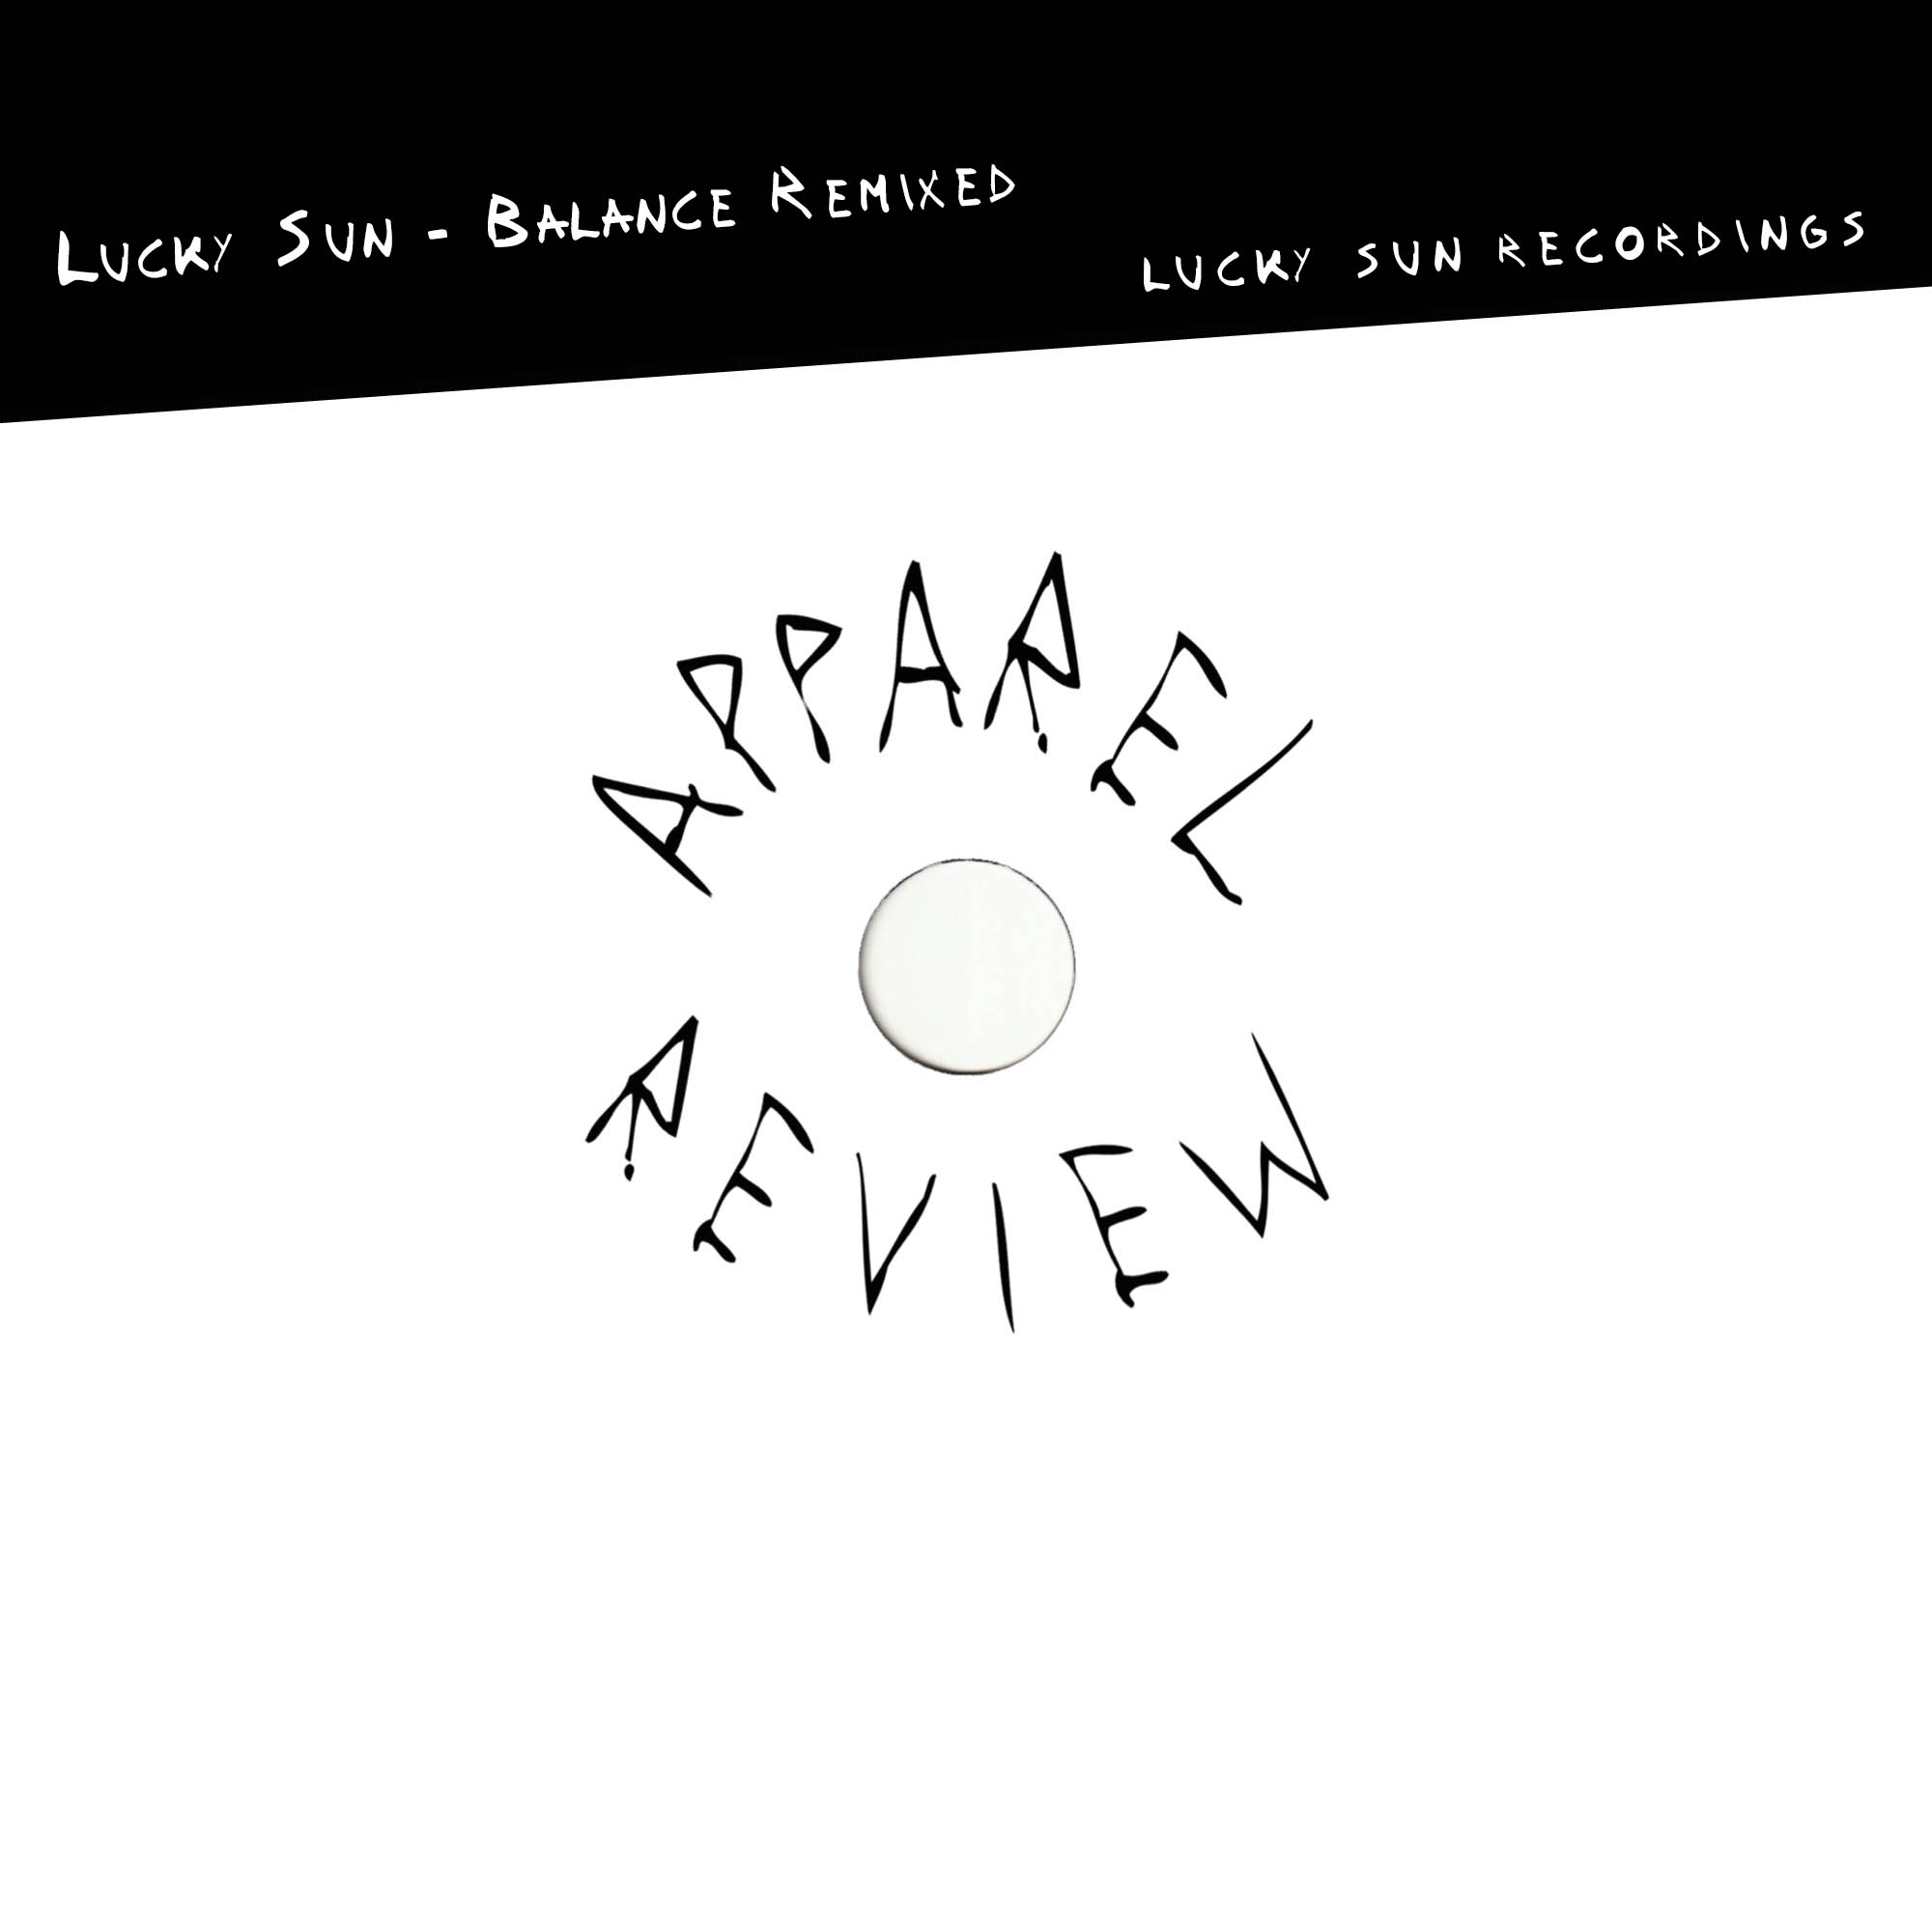 Apparel-Review Lucky Sun – Balance Remixed [Lucky Sun Recordings]